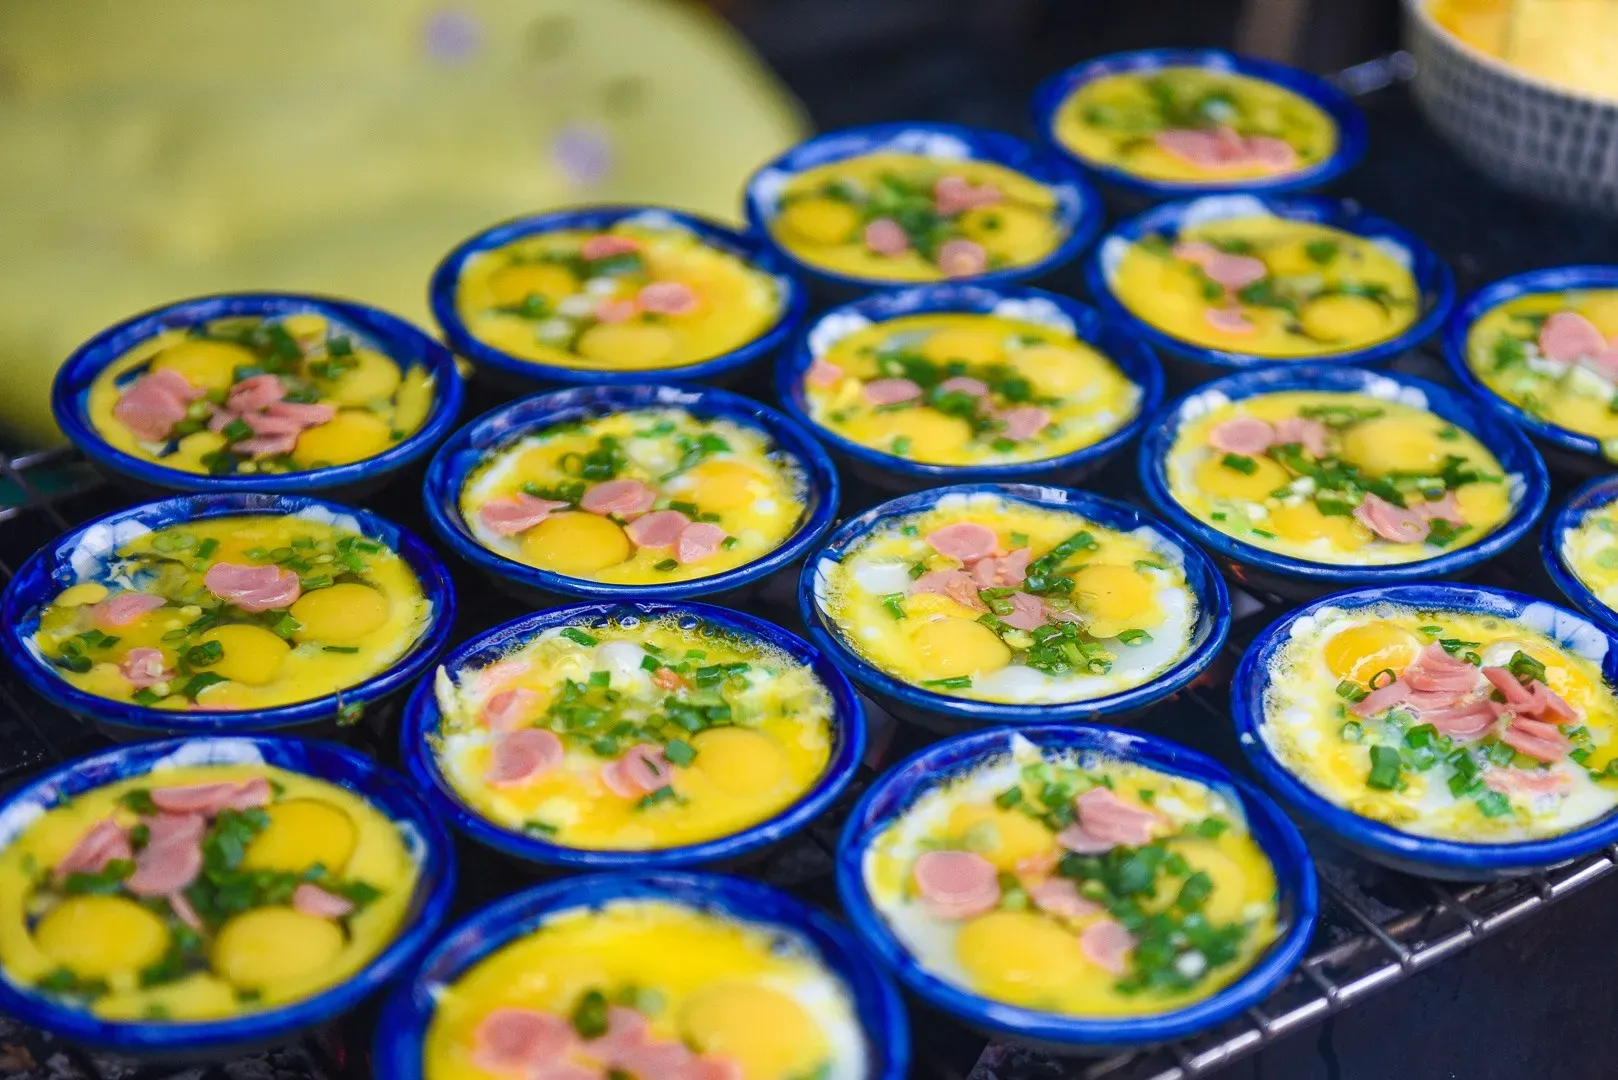 Trứng chén nướng thơm nức mũi ngày đông Hà Nội, đón trăm khách/ngày